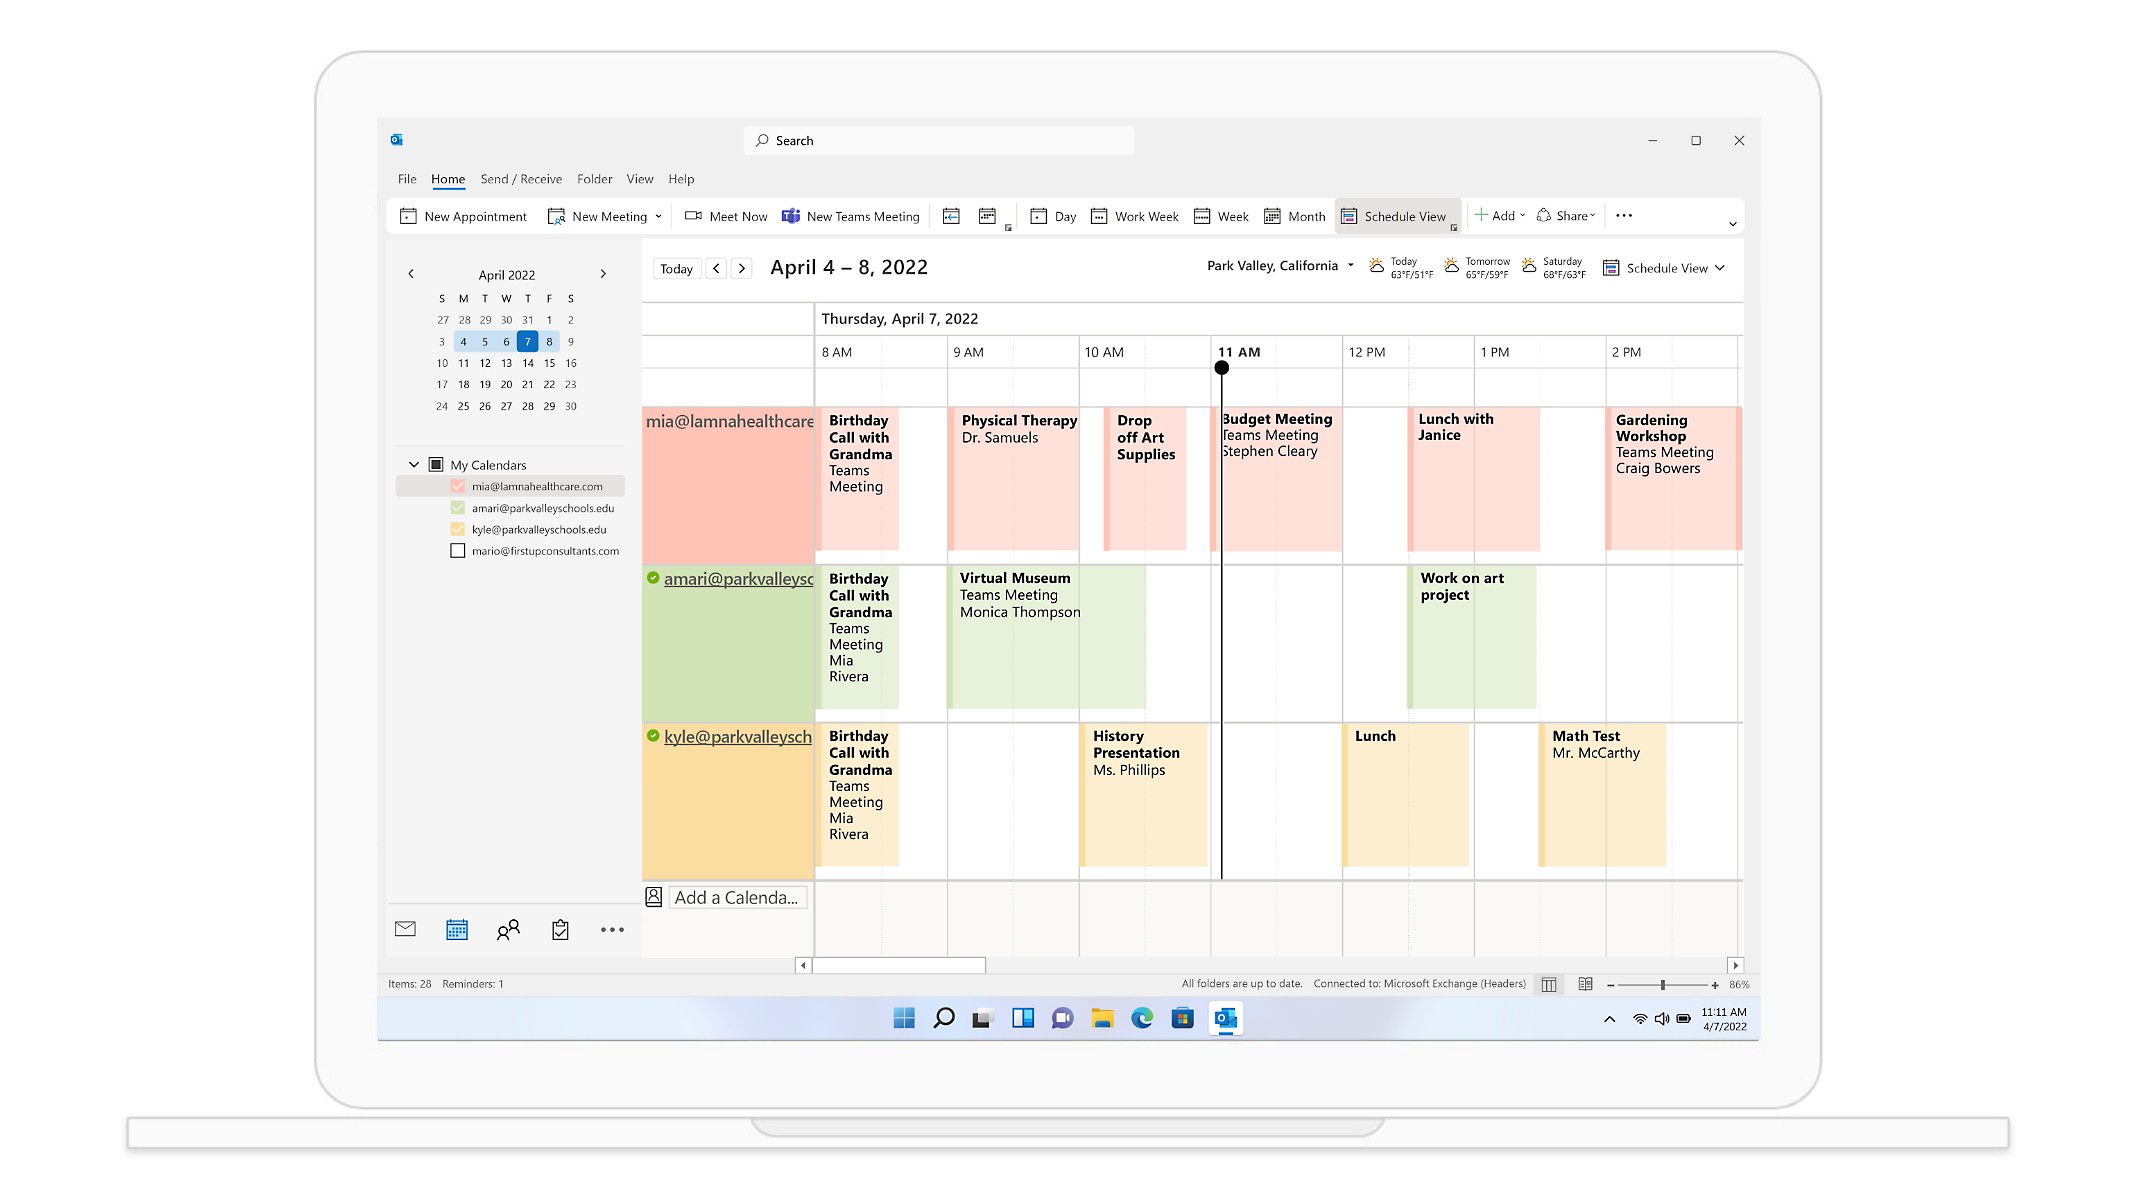 En kalendervy i Outlook med möten och avtalade tider för veckan som börjar 29 mars.